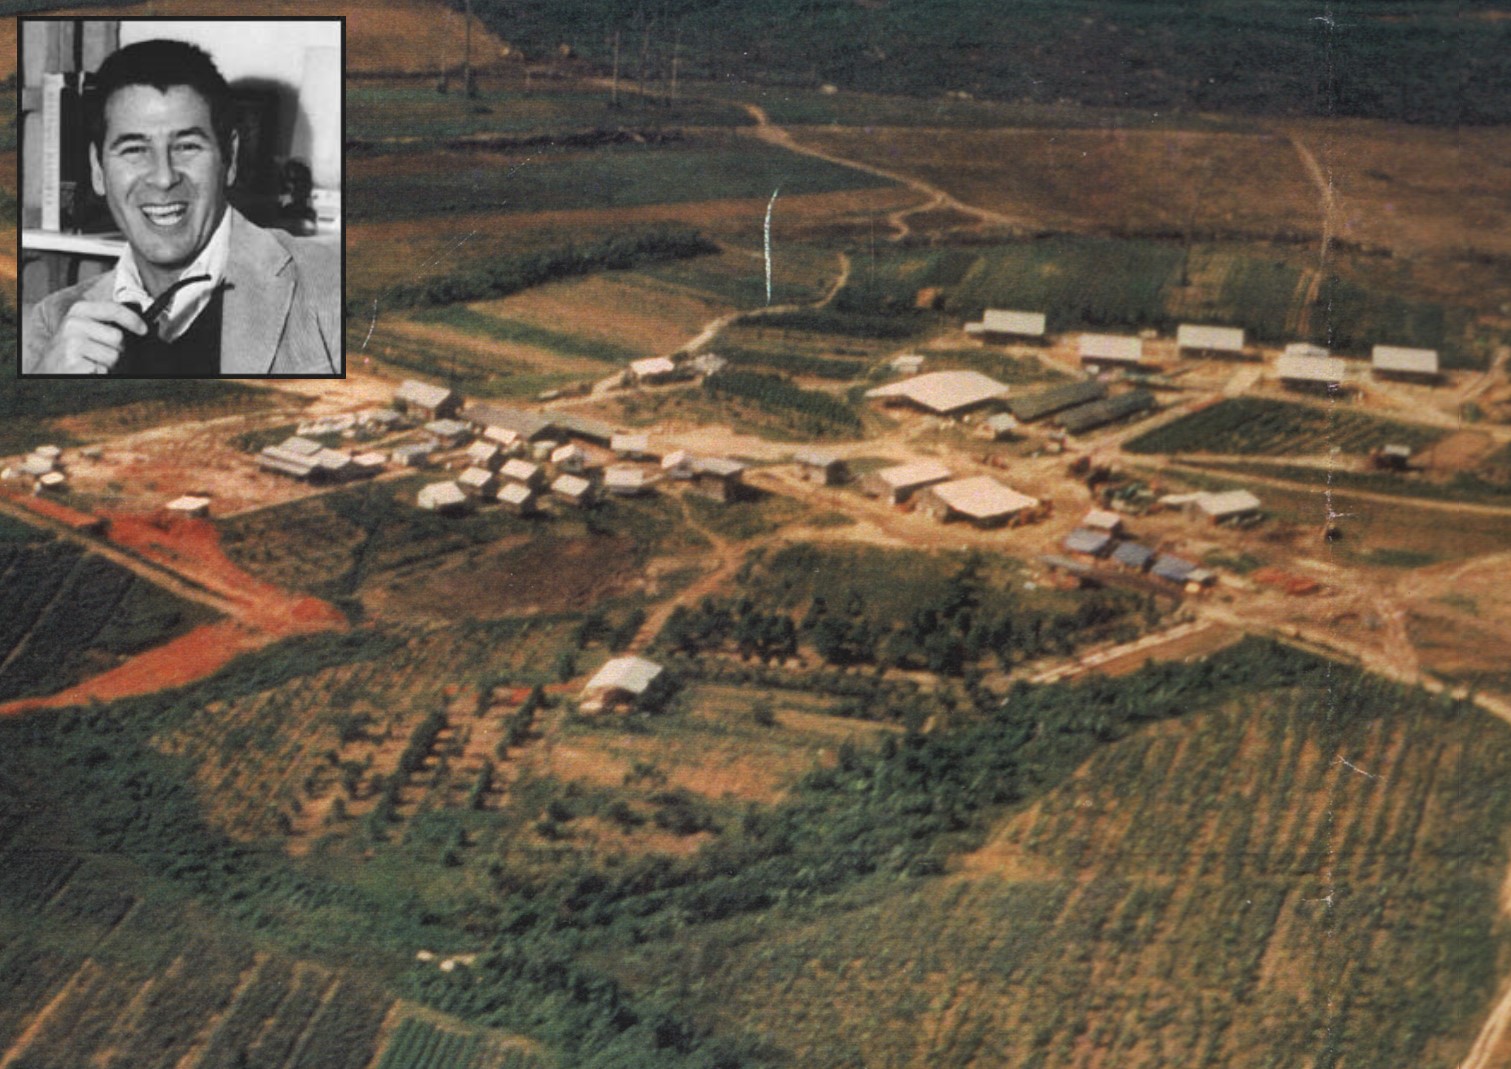 Jonestown aerial plus Freed inset